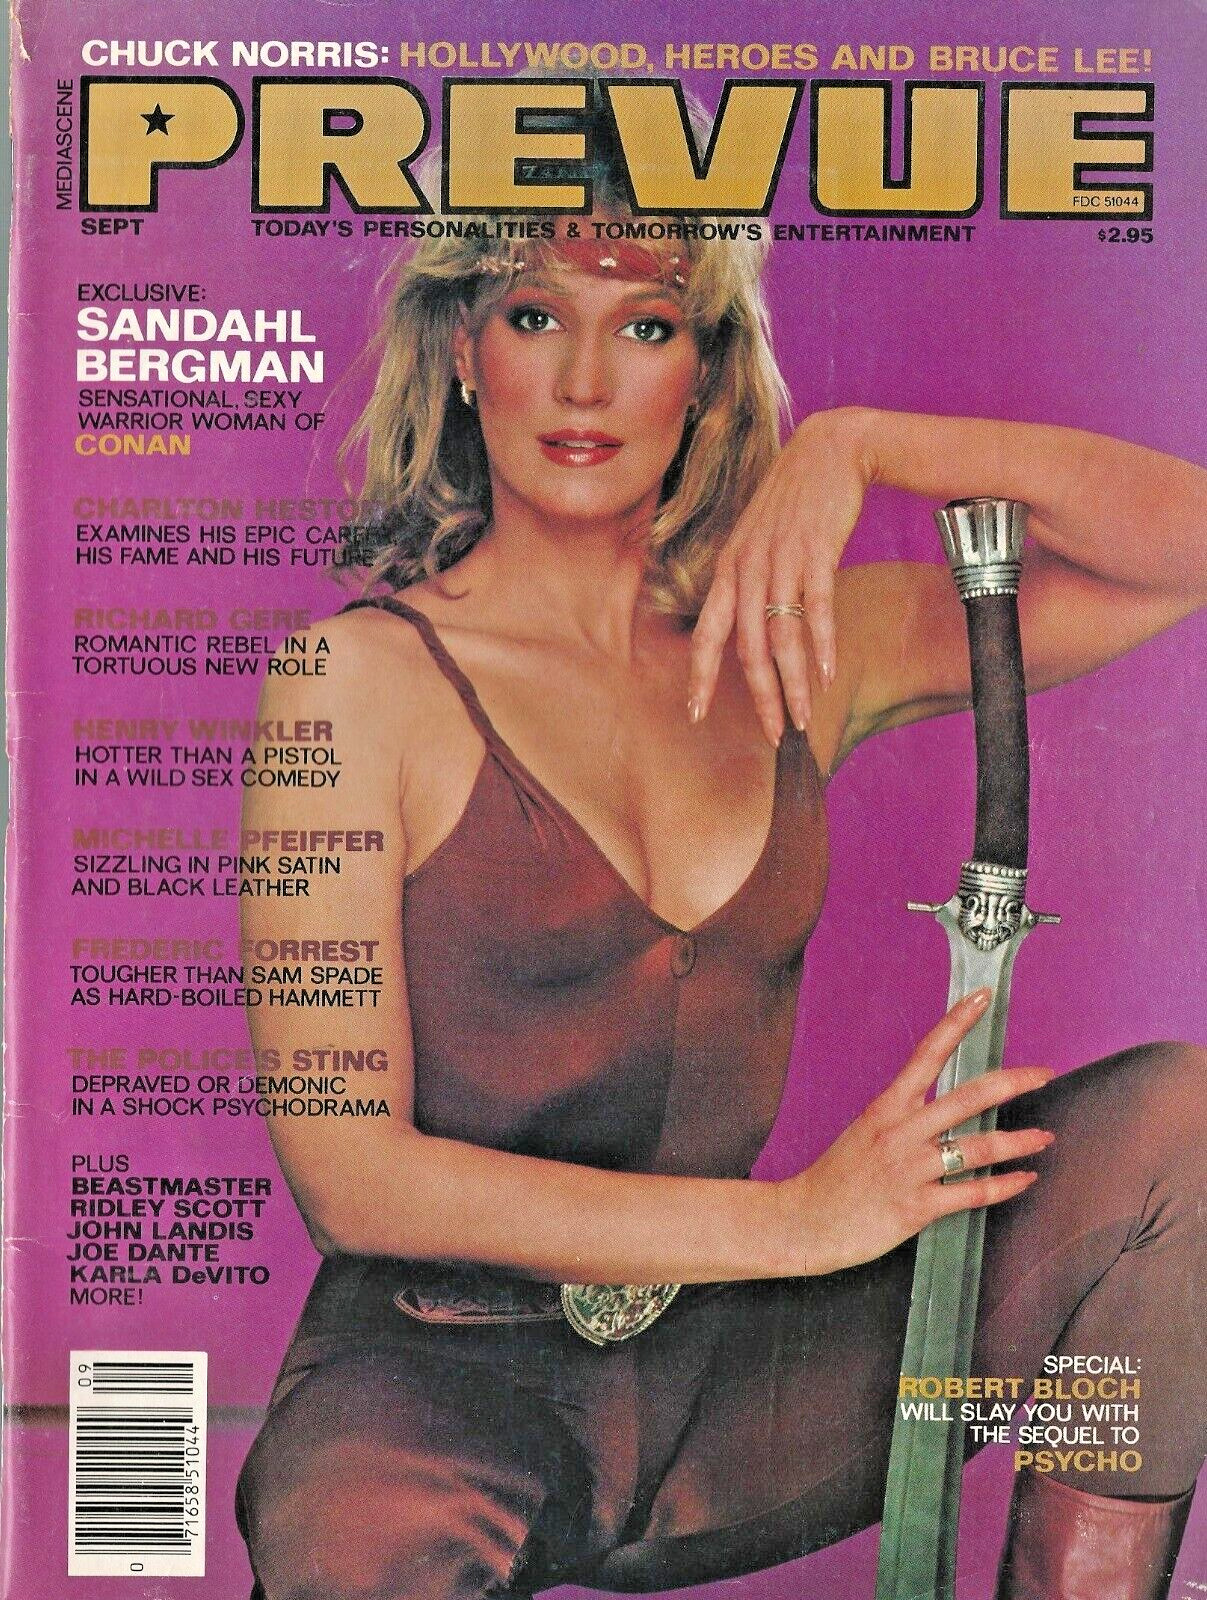 Prevue Magazine 9 Aug Sept 1982Sandahl Bergman Chuck Norris Robert Bloch